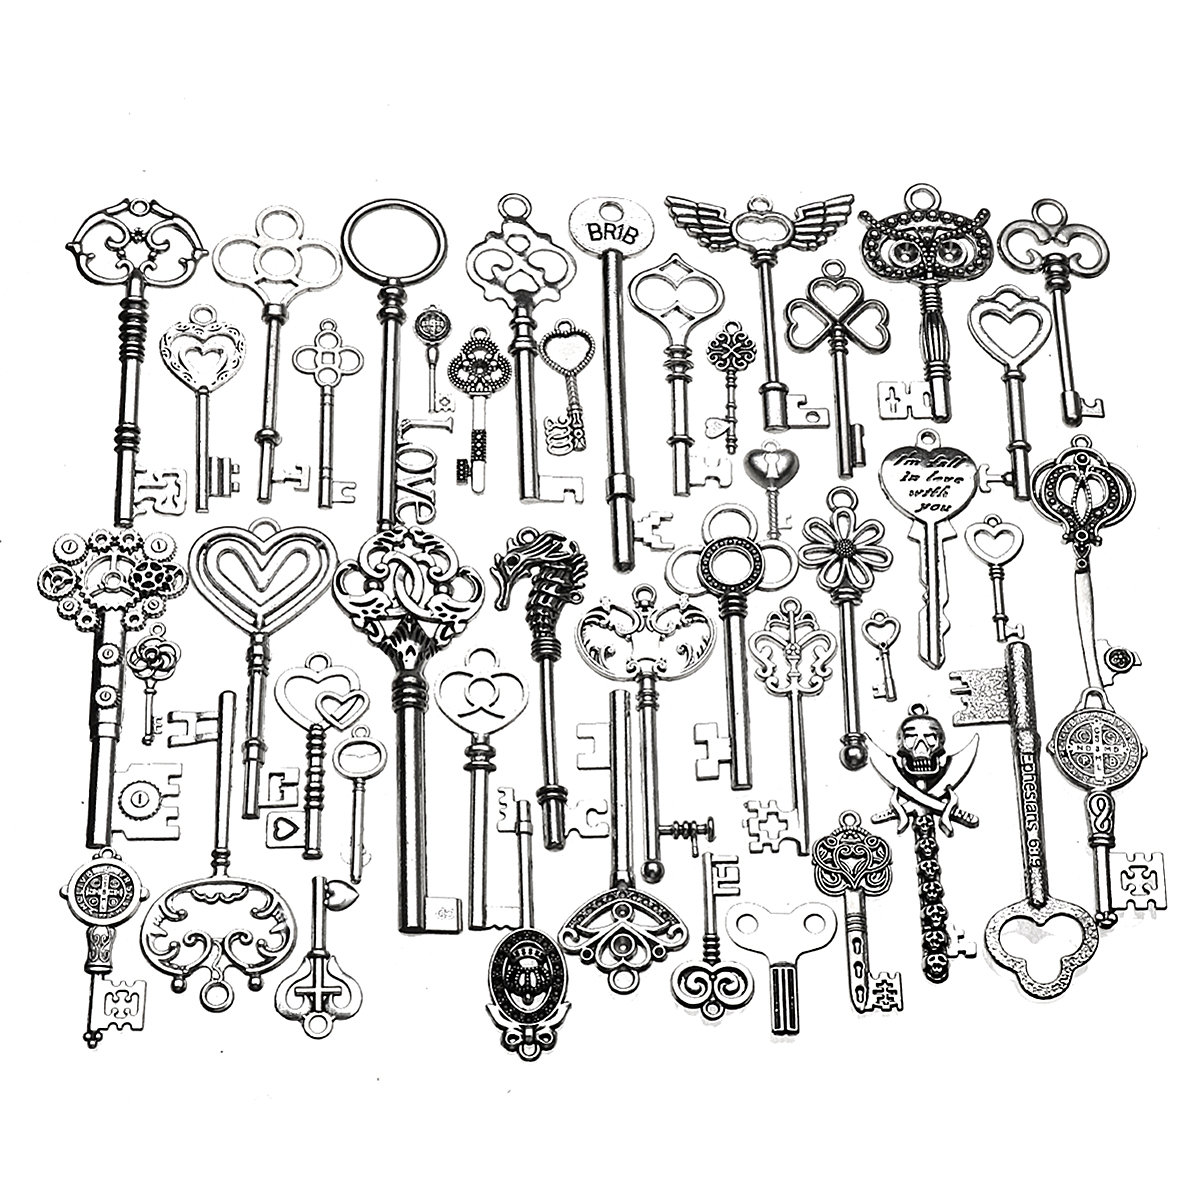 

45 pcs Vintage Ornate Skeleton Keys Lot Pendant Fancy Heart DIY Crafts